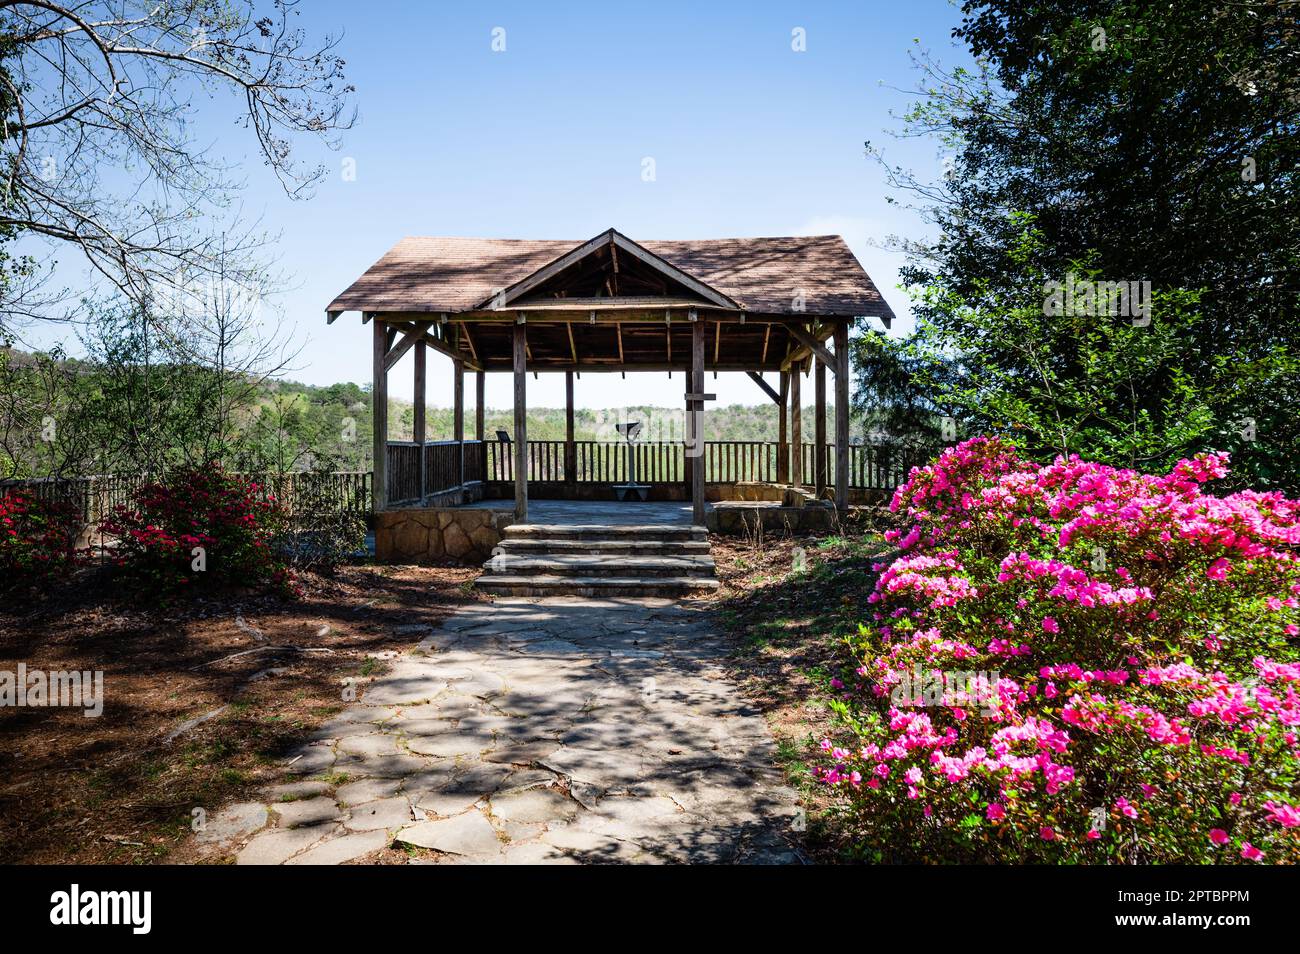 Admirez le pavillon entouré de fleurs roses au parc national de Tallulah gorge, à Tallulah Falls, en Géorgie Banque D'Images